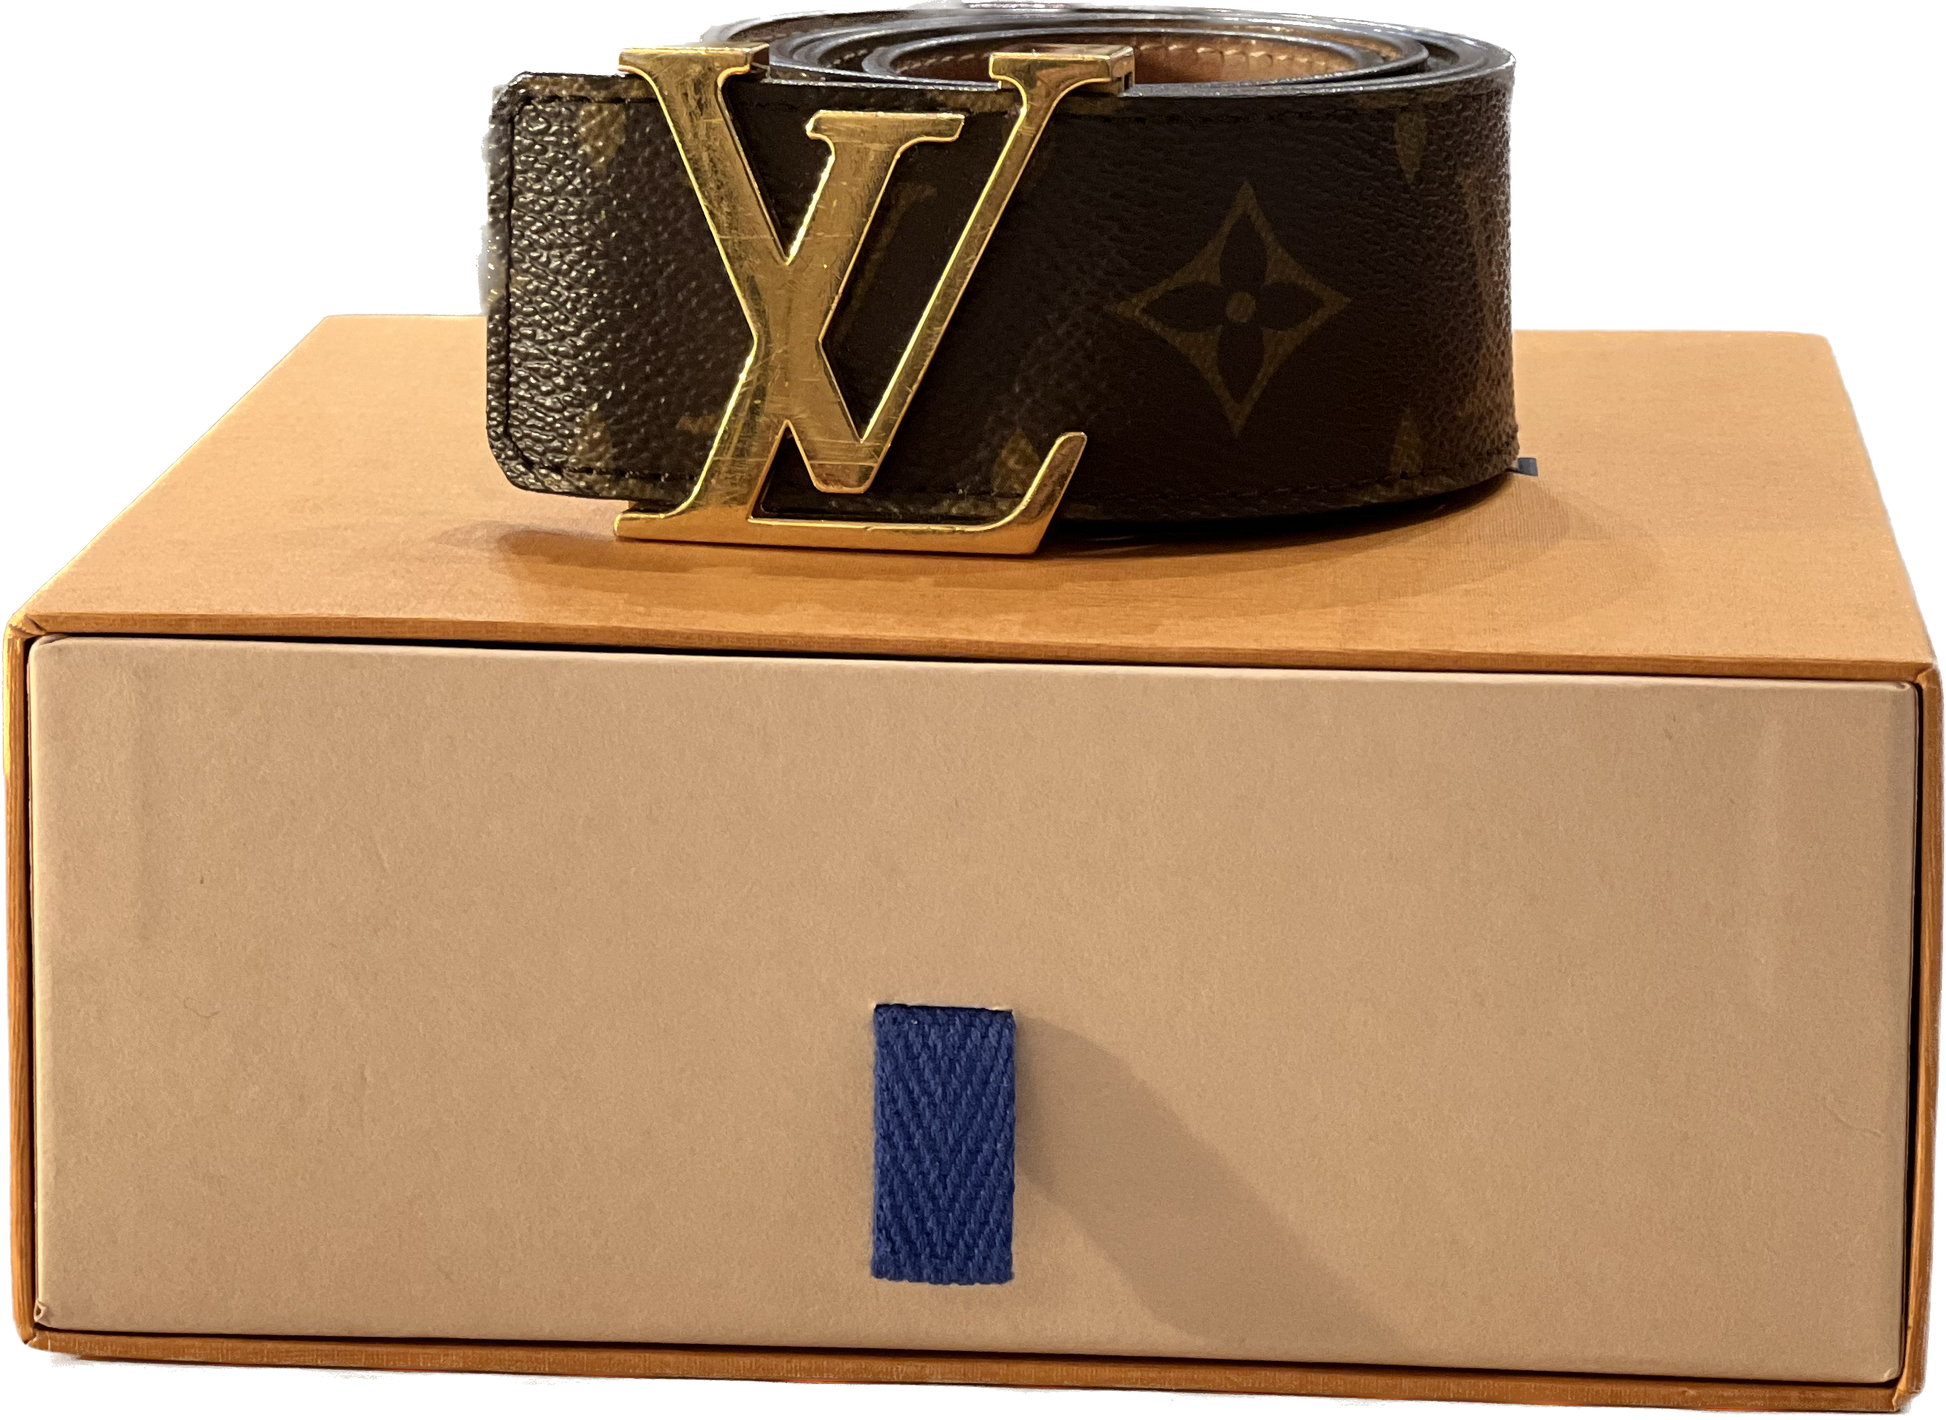 Cintura Louis Vuitton donna - Abbigliamento e Accessori In vendita a Torino